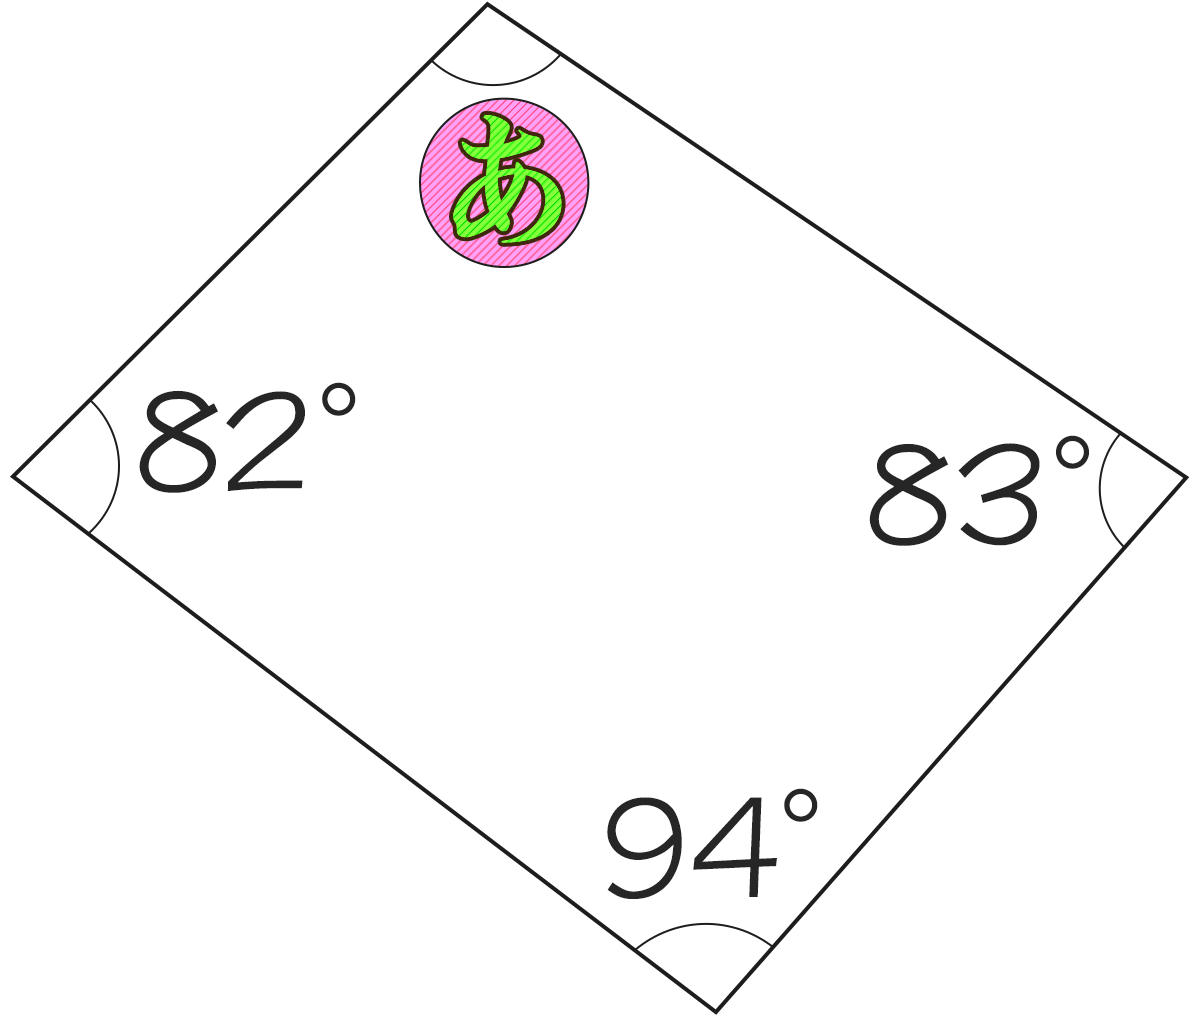 四角形の内角が82°、83°、94°のときもうひとつの角度は何度ですか